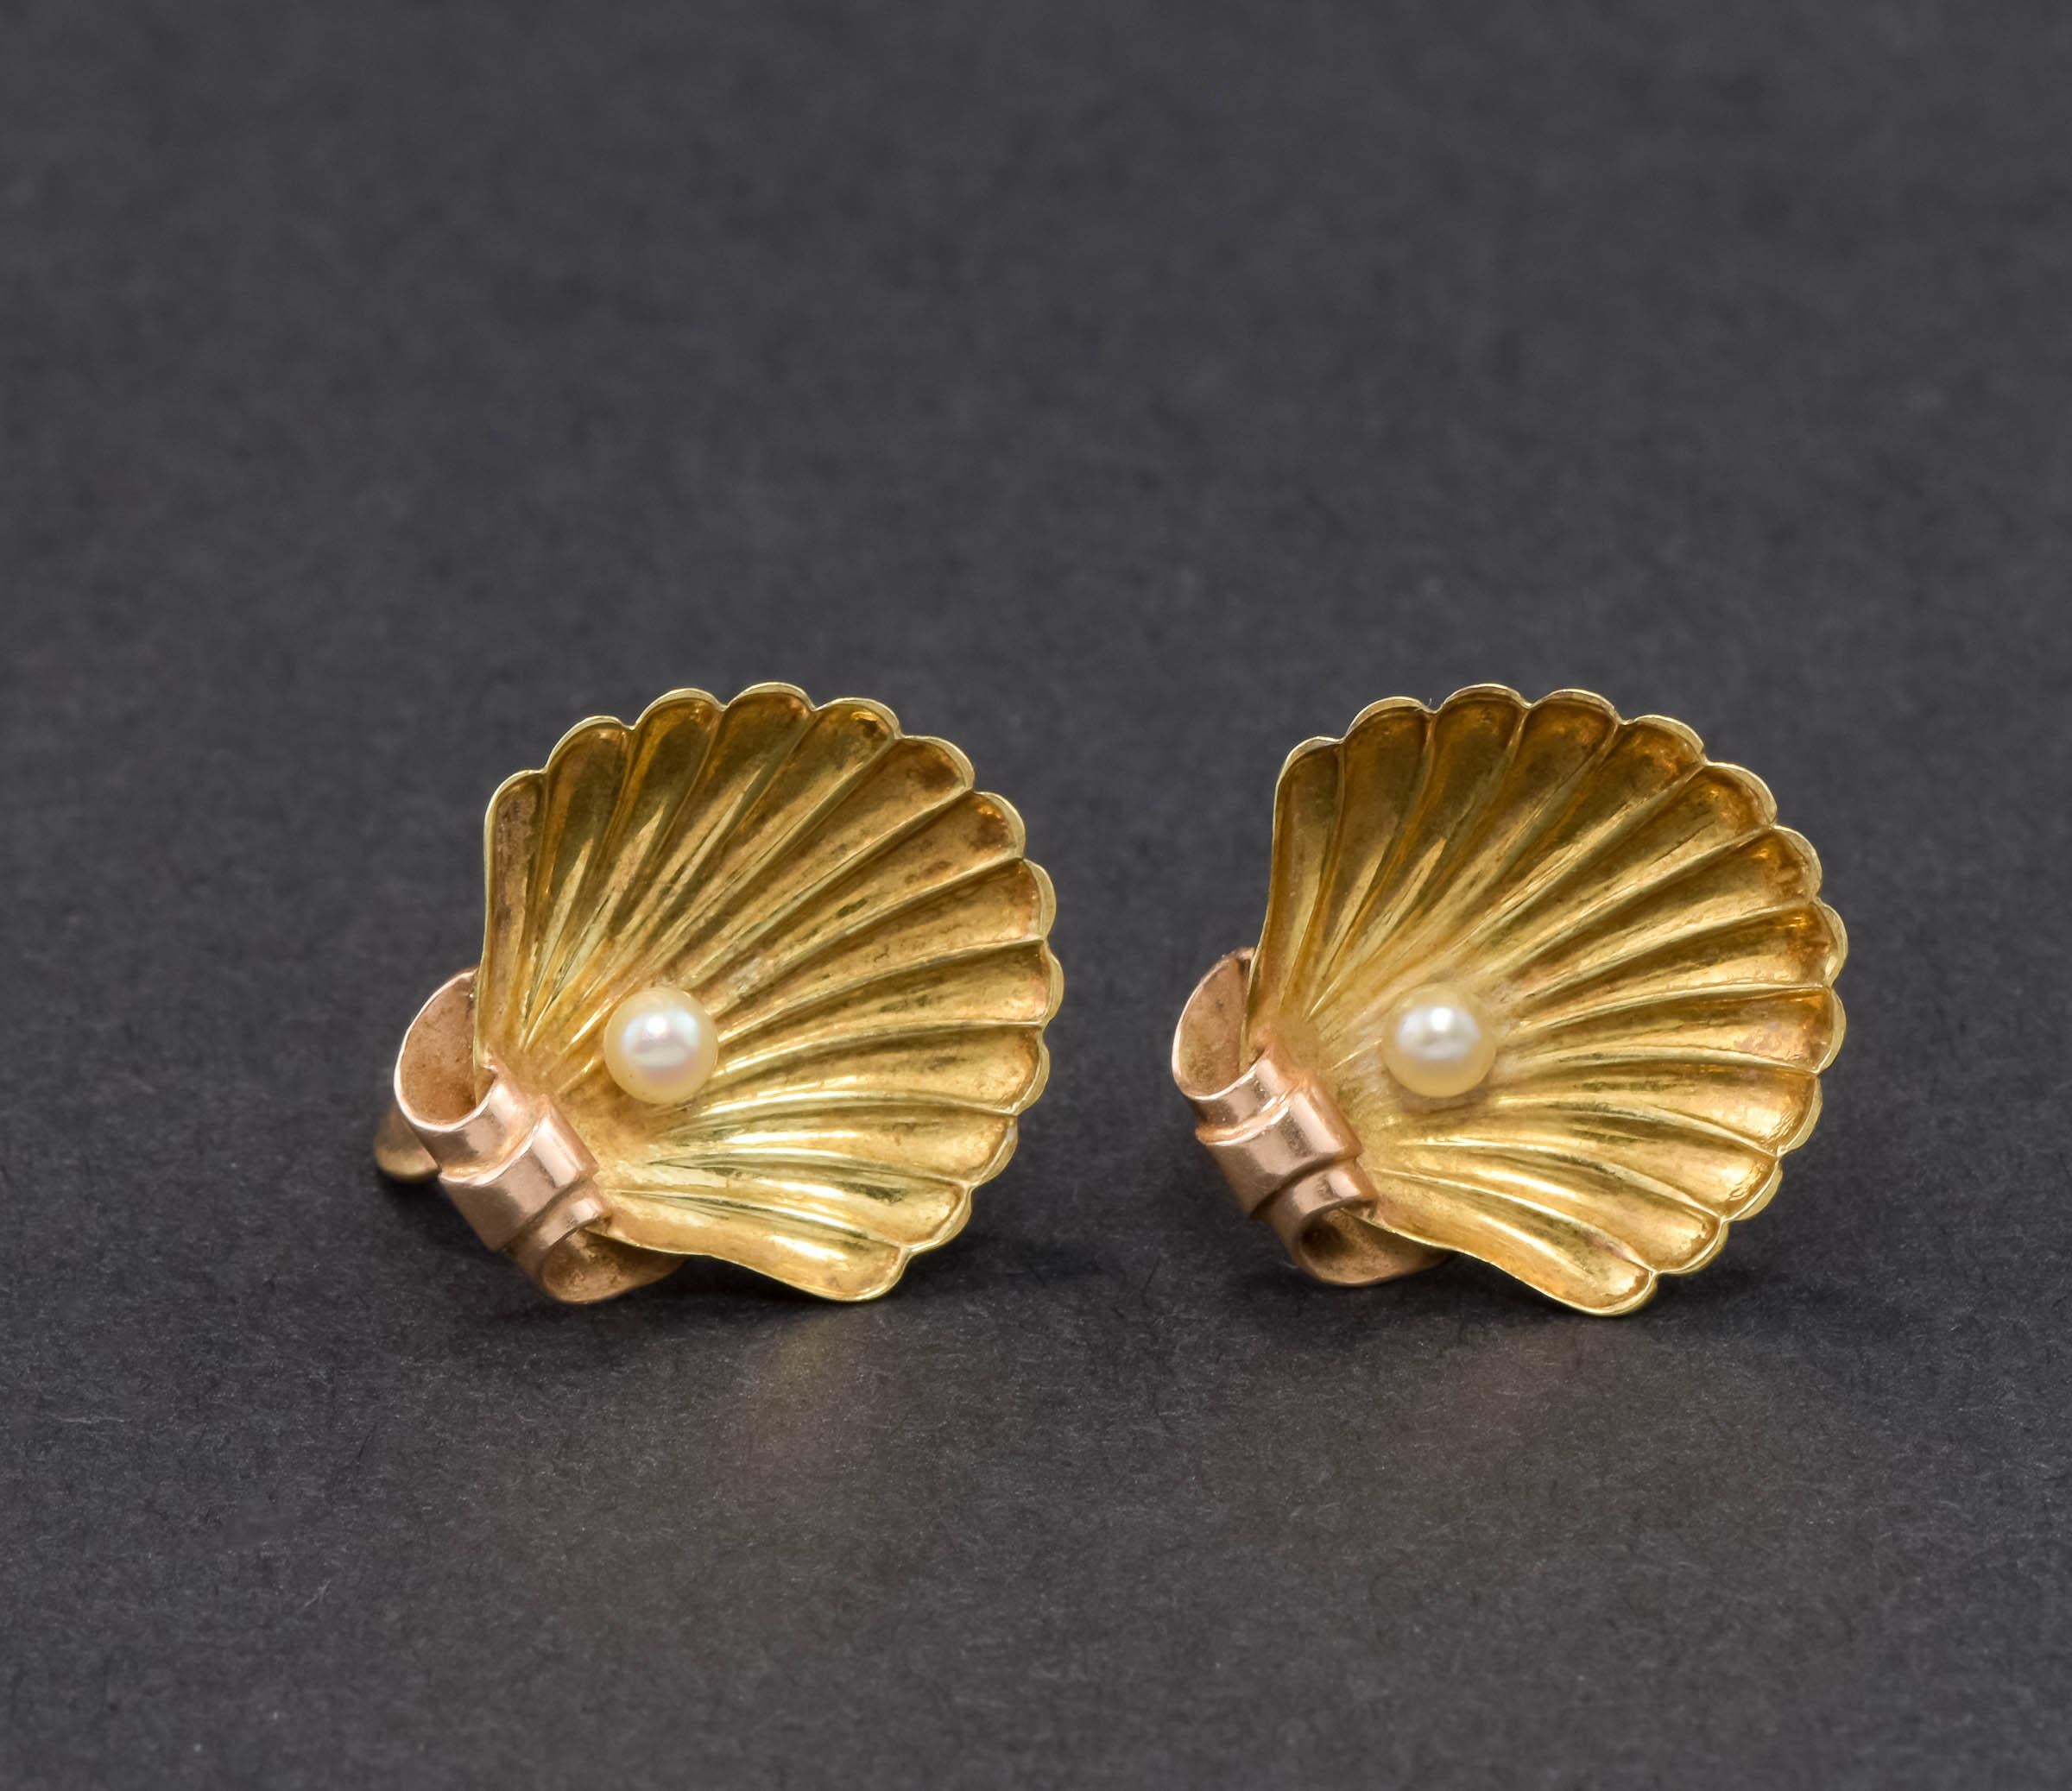 Ich freue mich, ein schönes Paar antiker 14K Gold Shell Ohrringe von Sloan & Company anbieten zu können.  Diese Ohrringe haben französische Schraubverschlüsse und sind für nicht gepiercte Ohren gedacht, können aber auf Wunsch in gepiercte Ohrringe